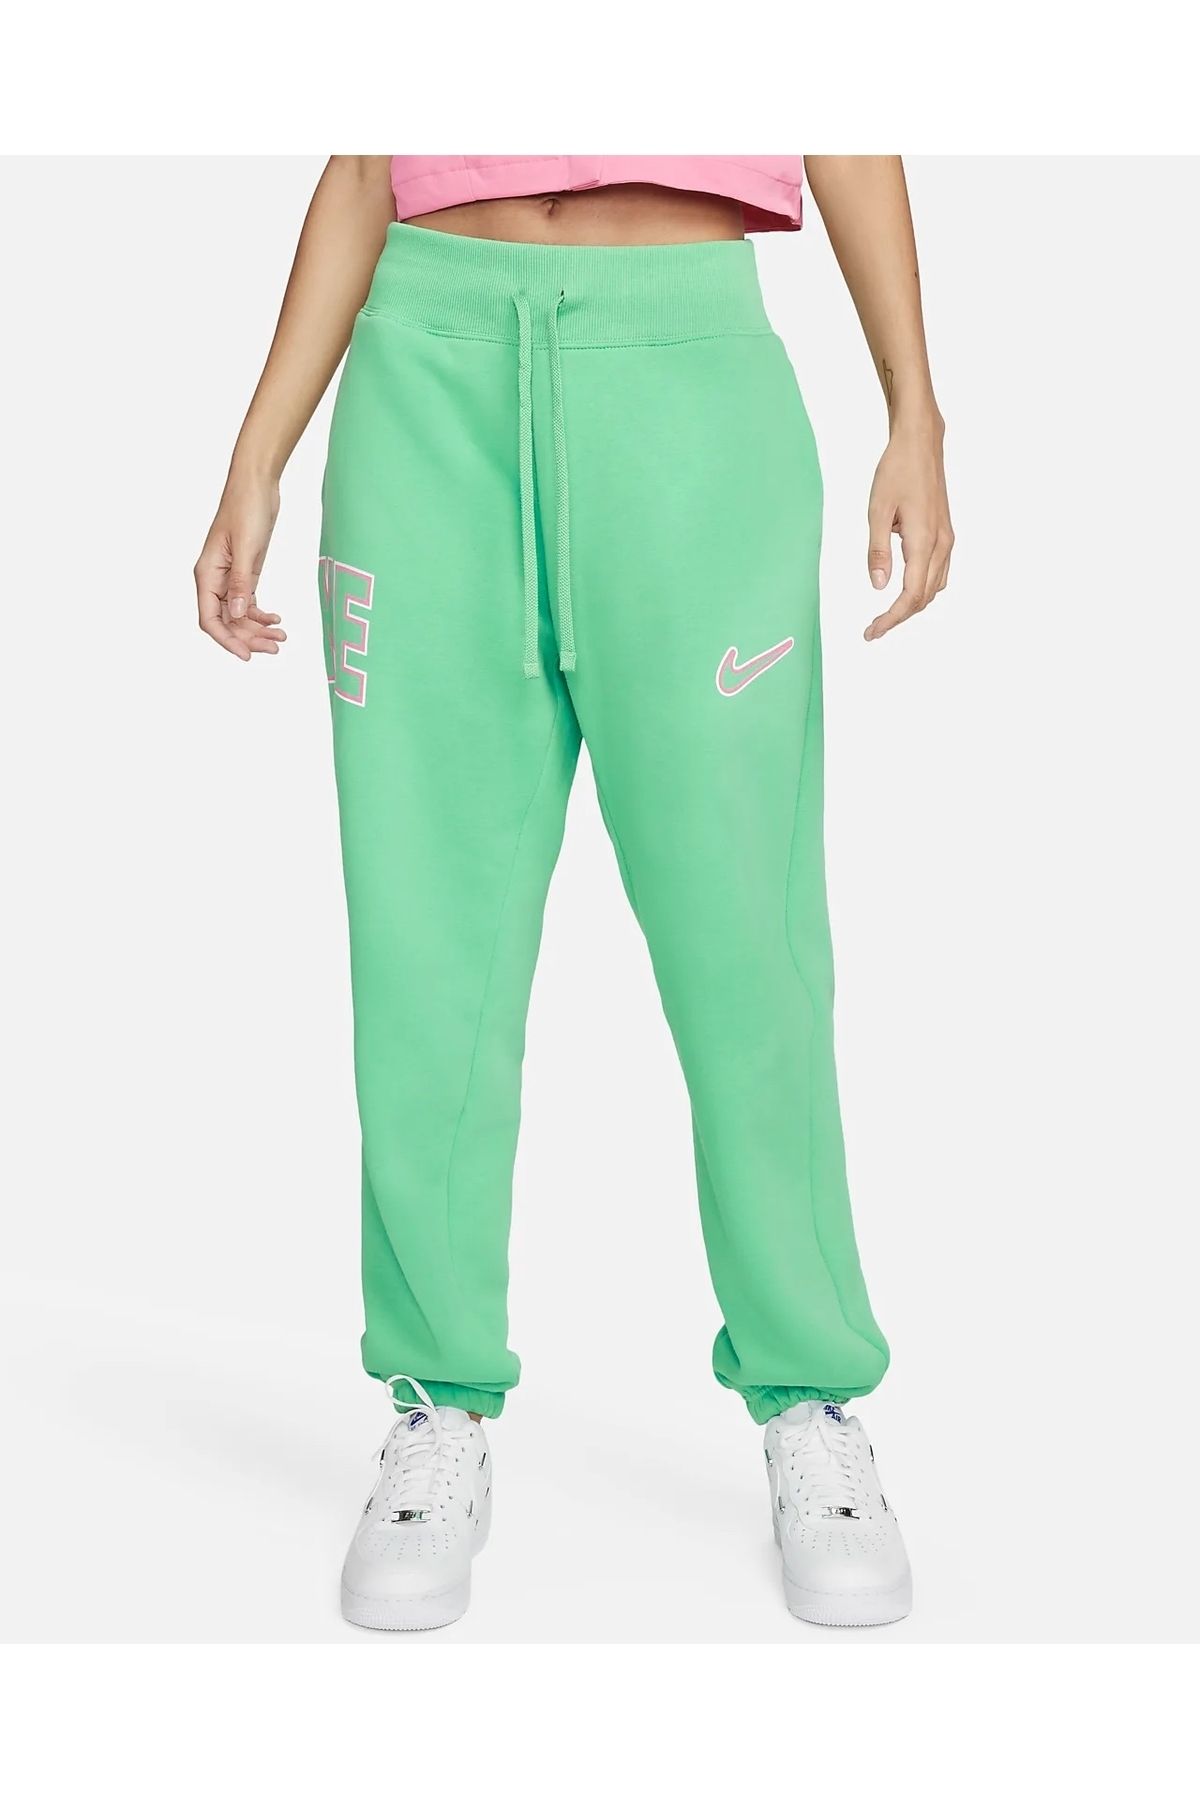 Nike Sportswear Phoenix Fleece High Waist Women's Trousers NDD